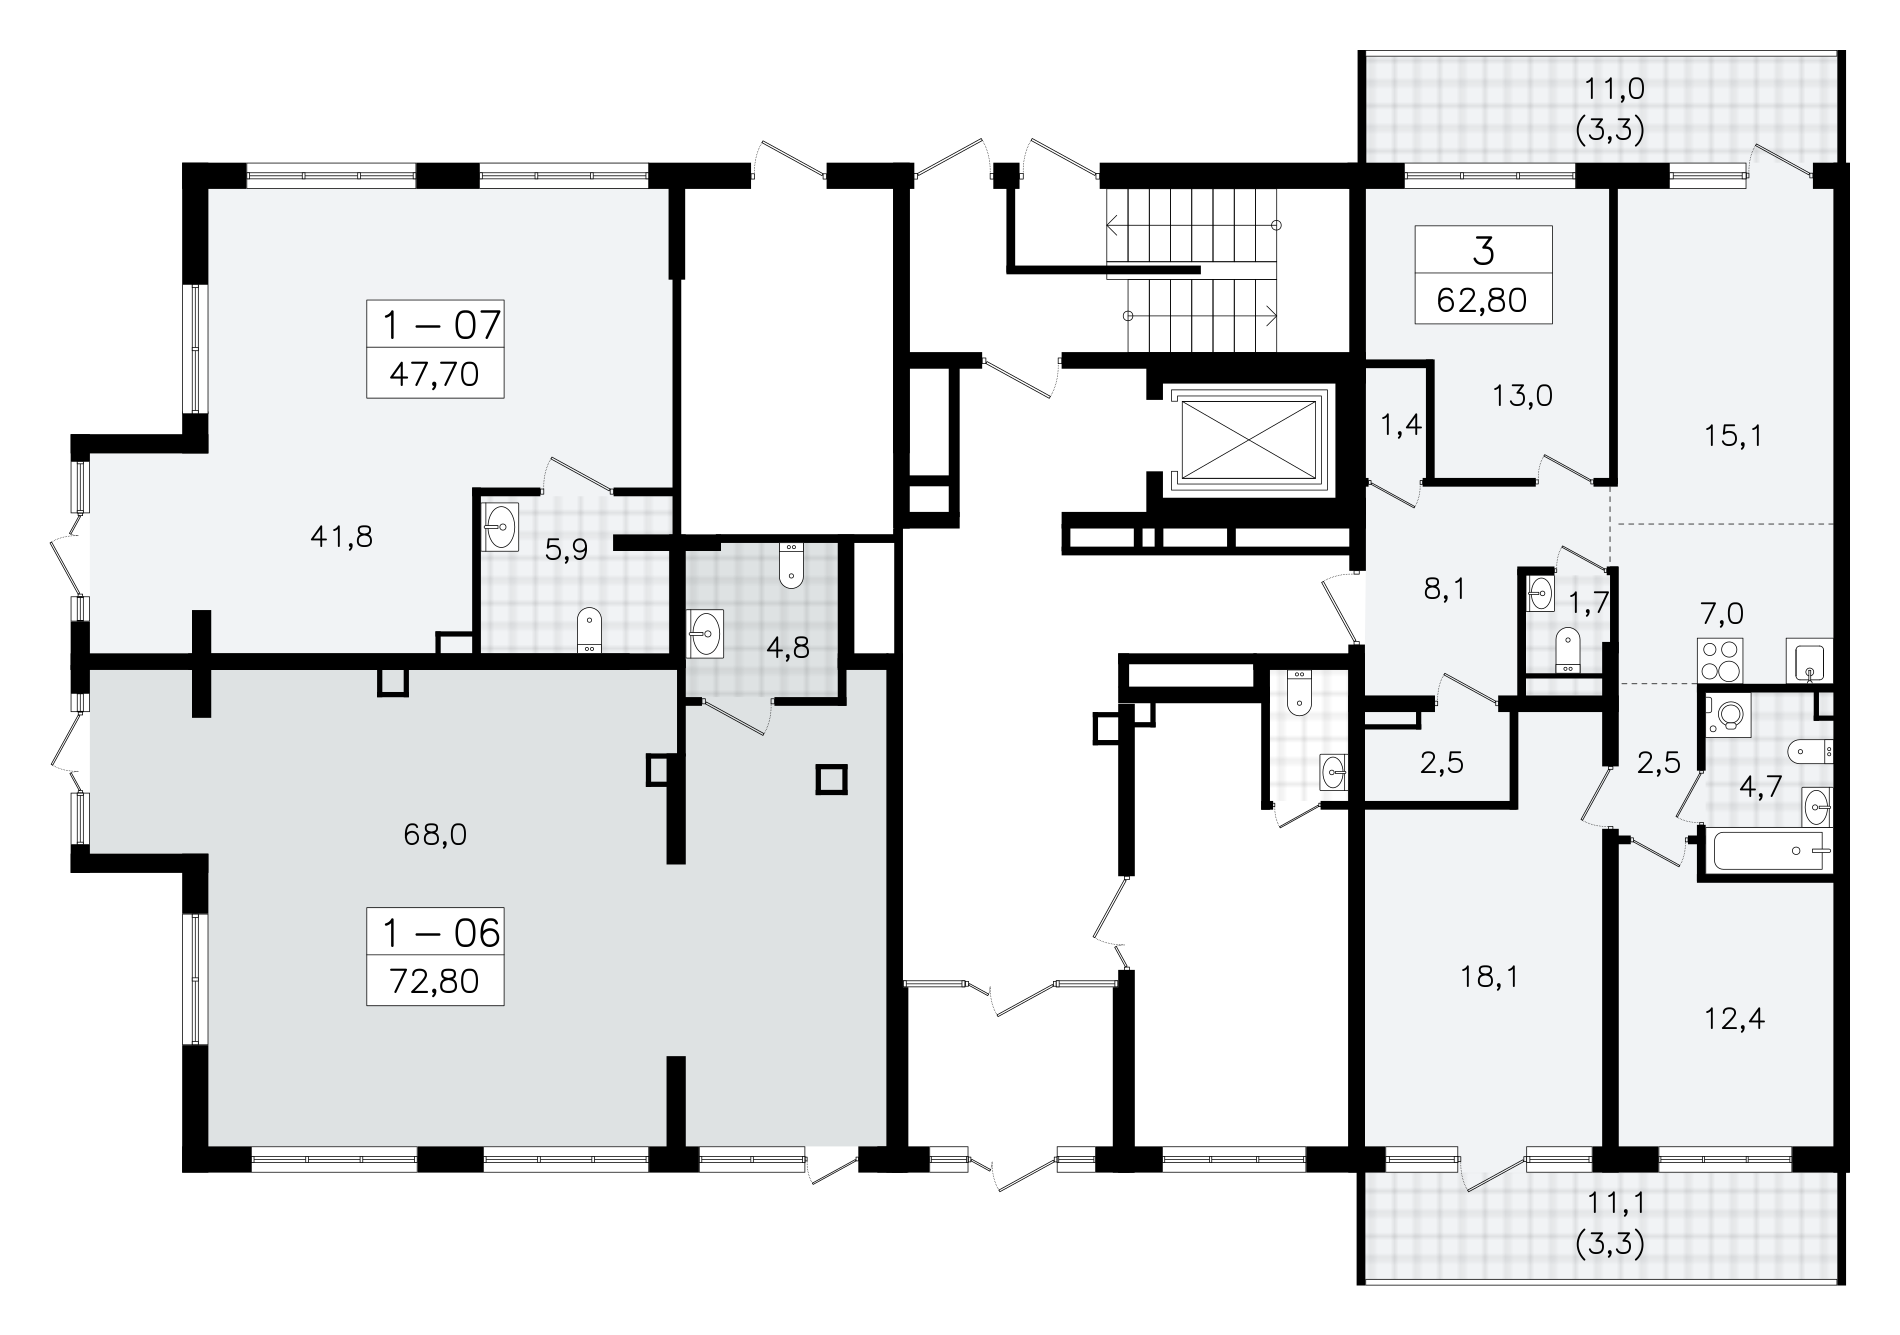 Помещение, 72.8 м² - планировка этажа